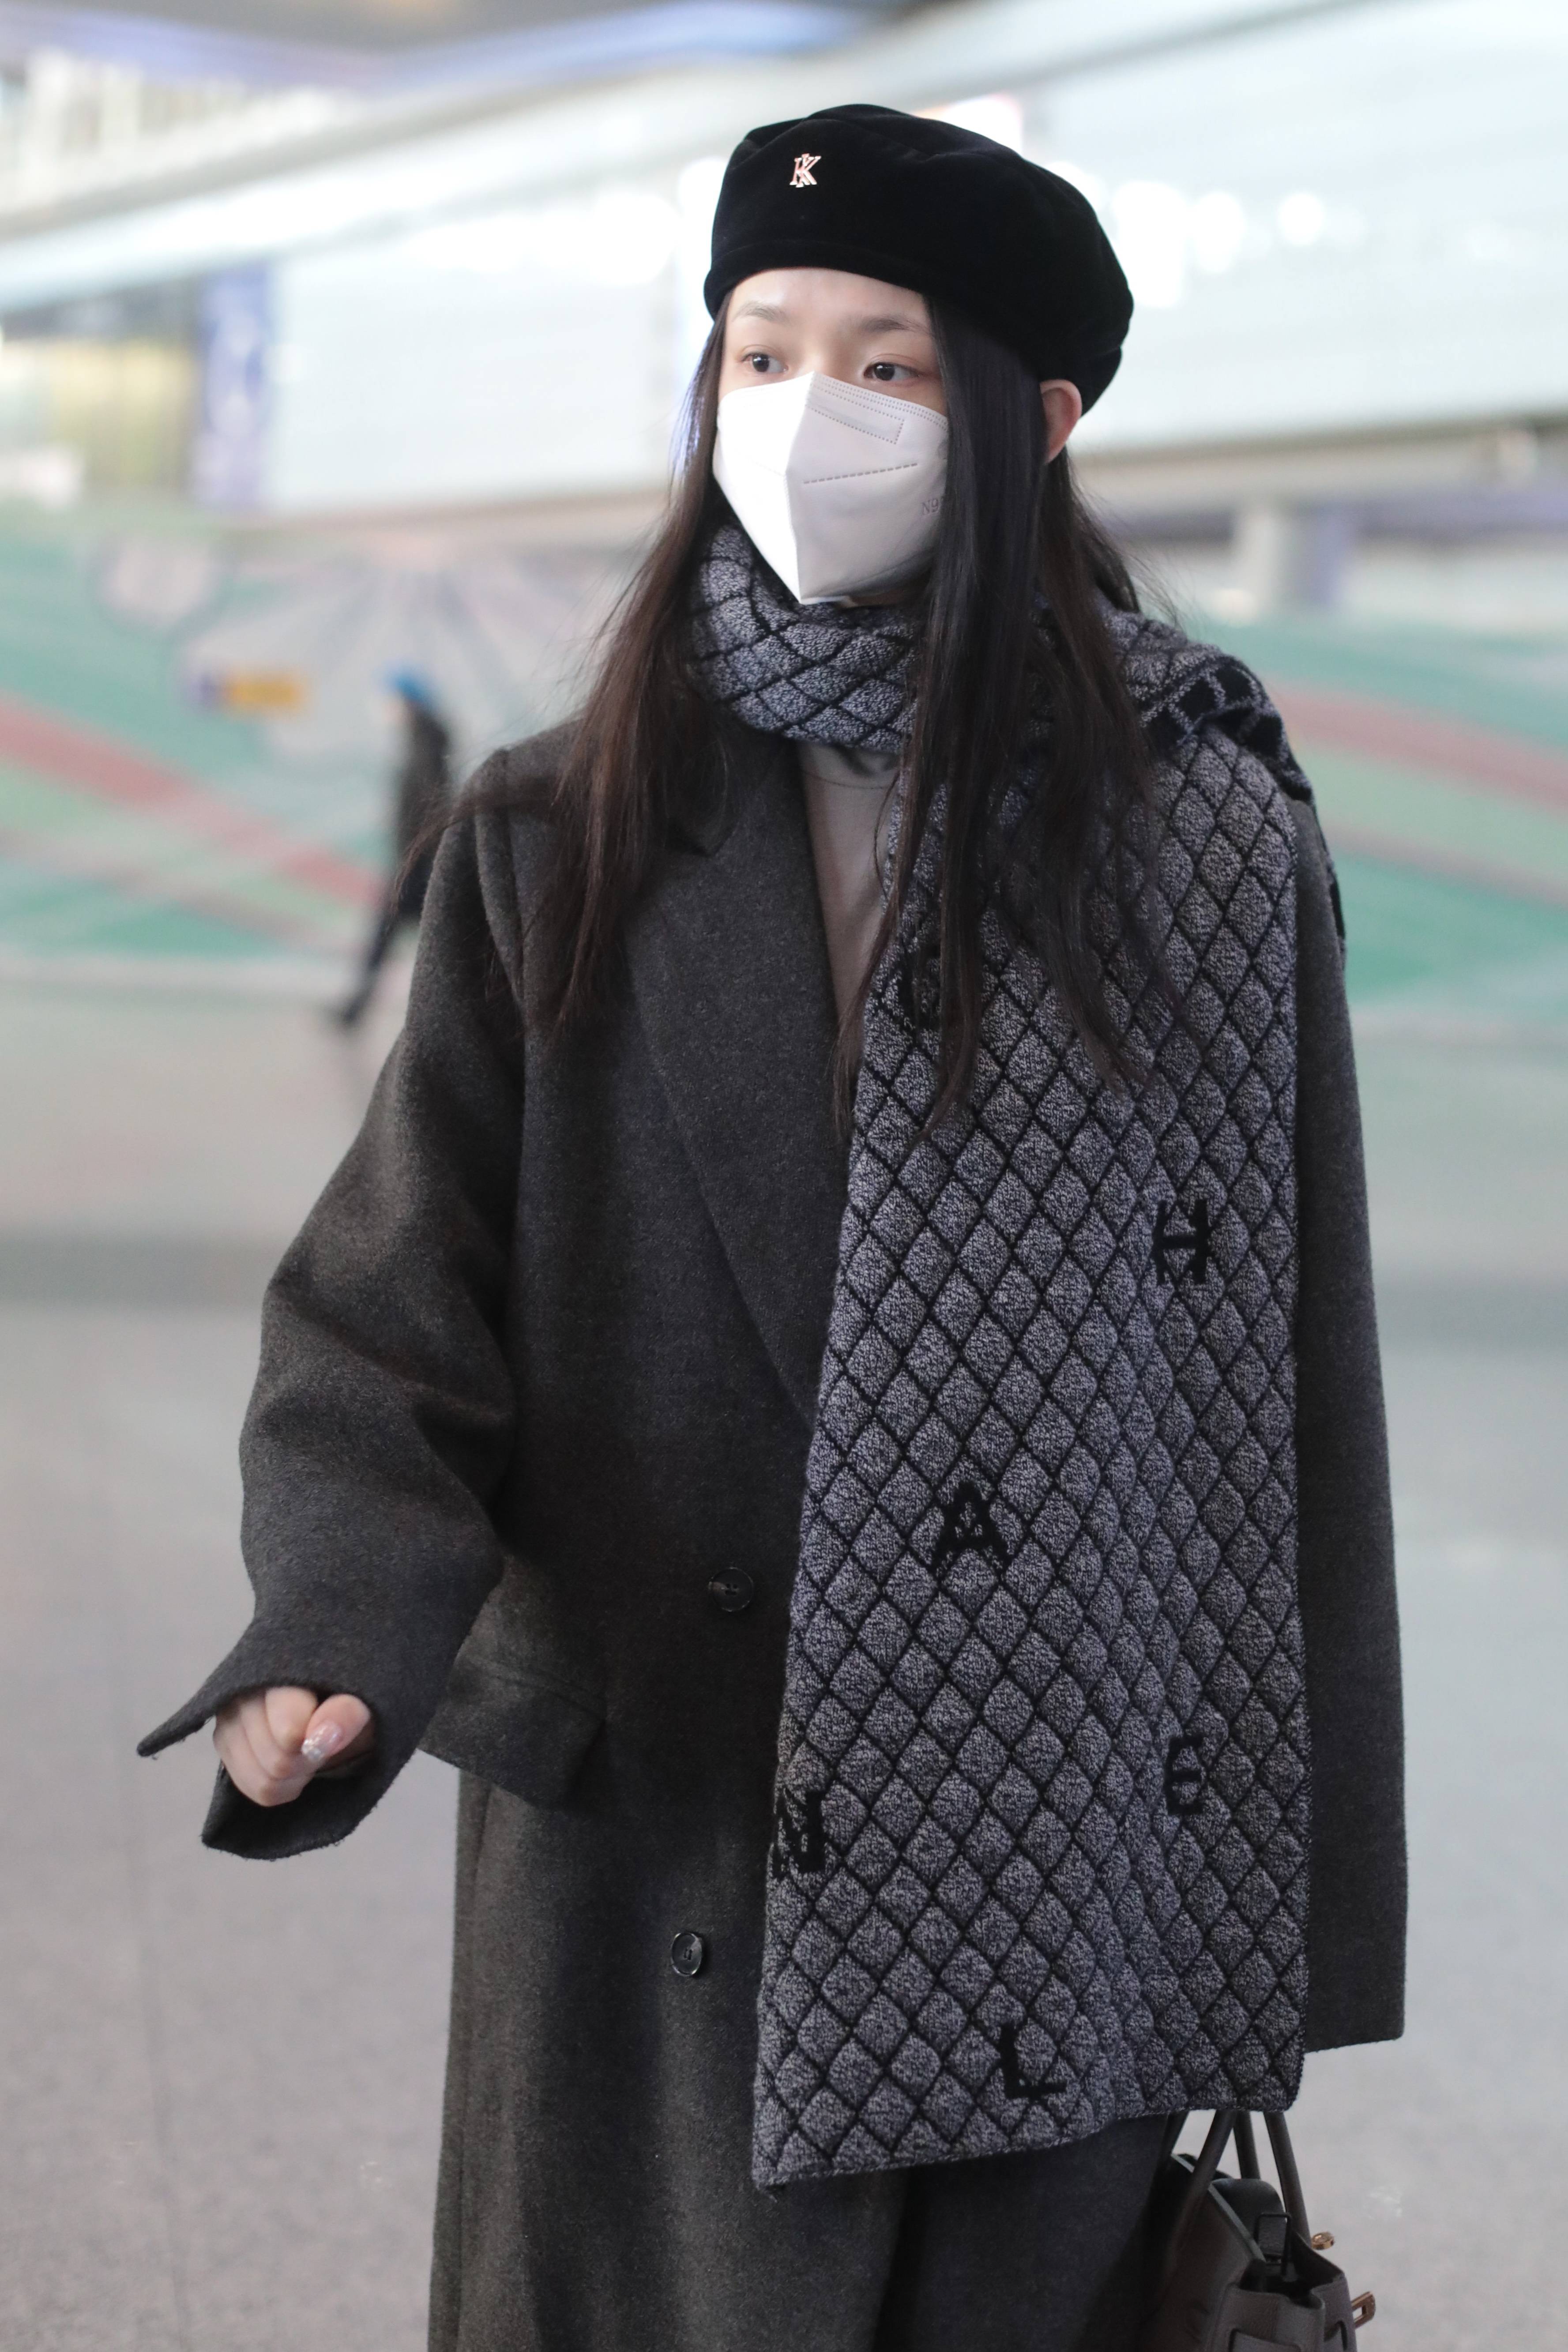 林允穿毛呢大衣现身机场 大围巾搭在肩上显优雅-搜狐大视野-搜狐新闻